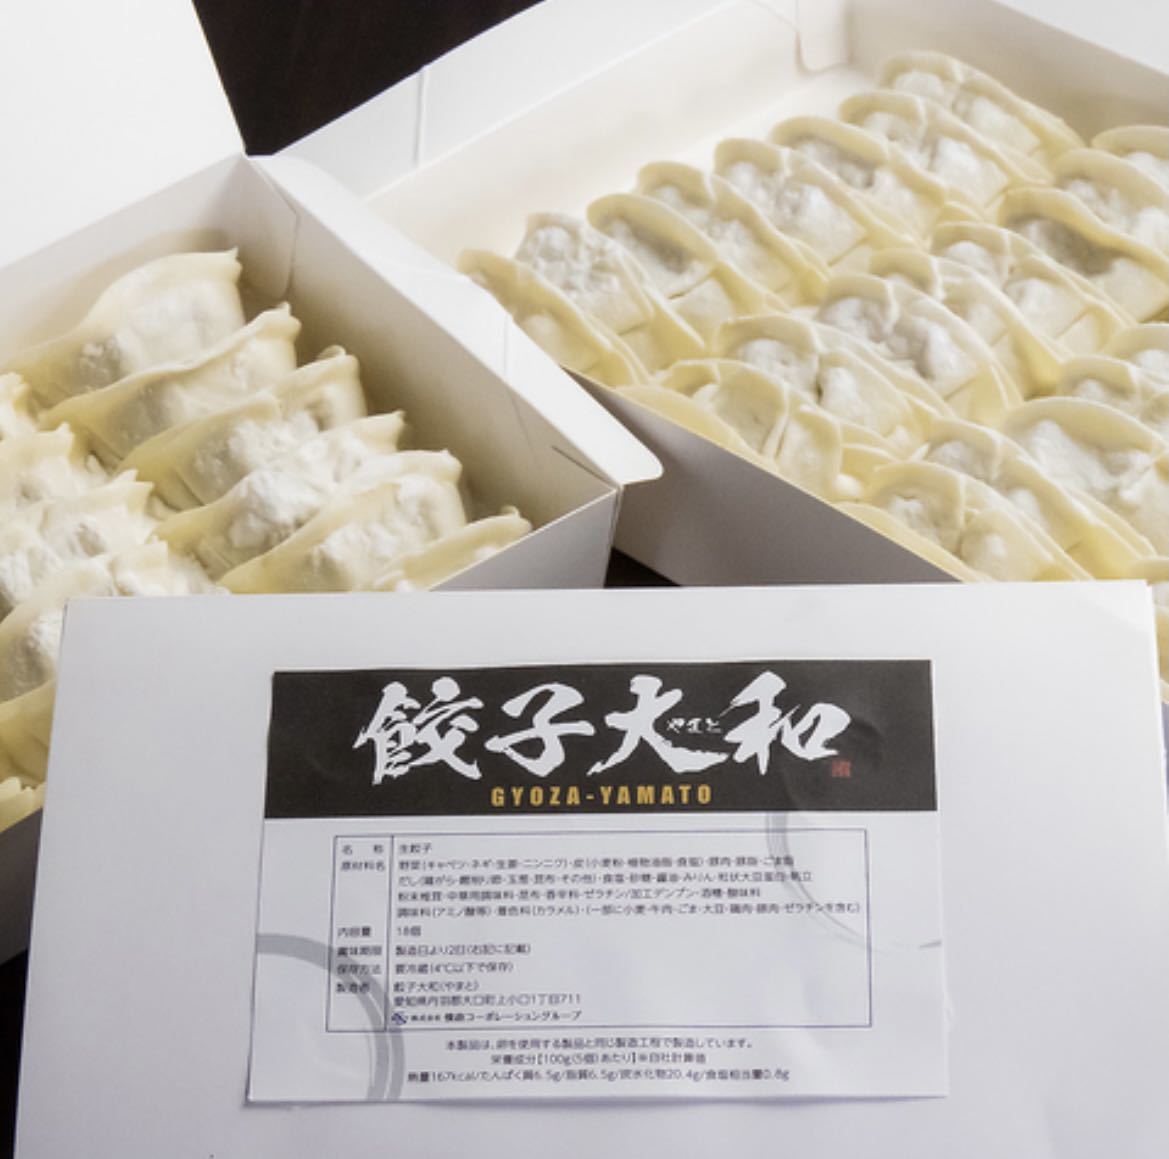  гёдза специализированный магазин гёдза Yamato Gifu префектура производство Mino здоровый свинина сочетание рефрижератор сырой гёдза 80 шт (20 штук ×4) примерно 1.6kgtare есть 